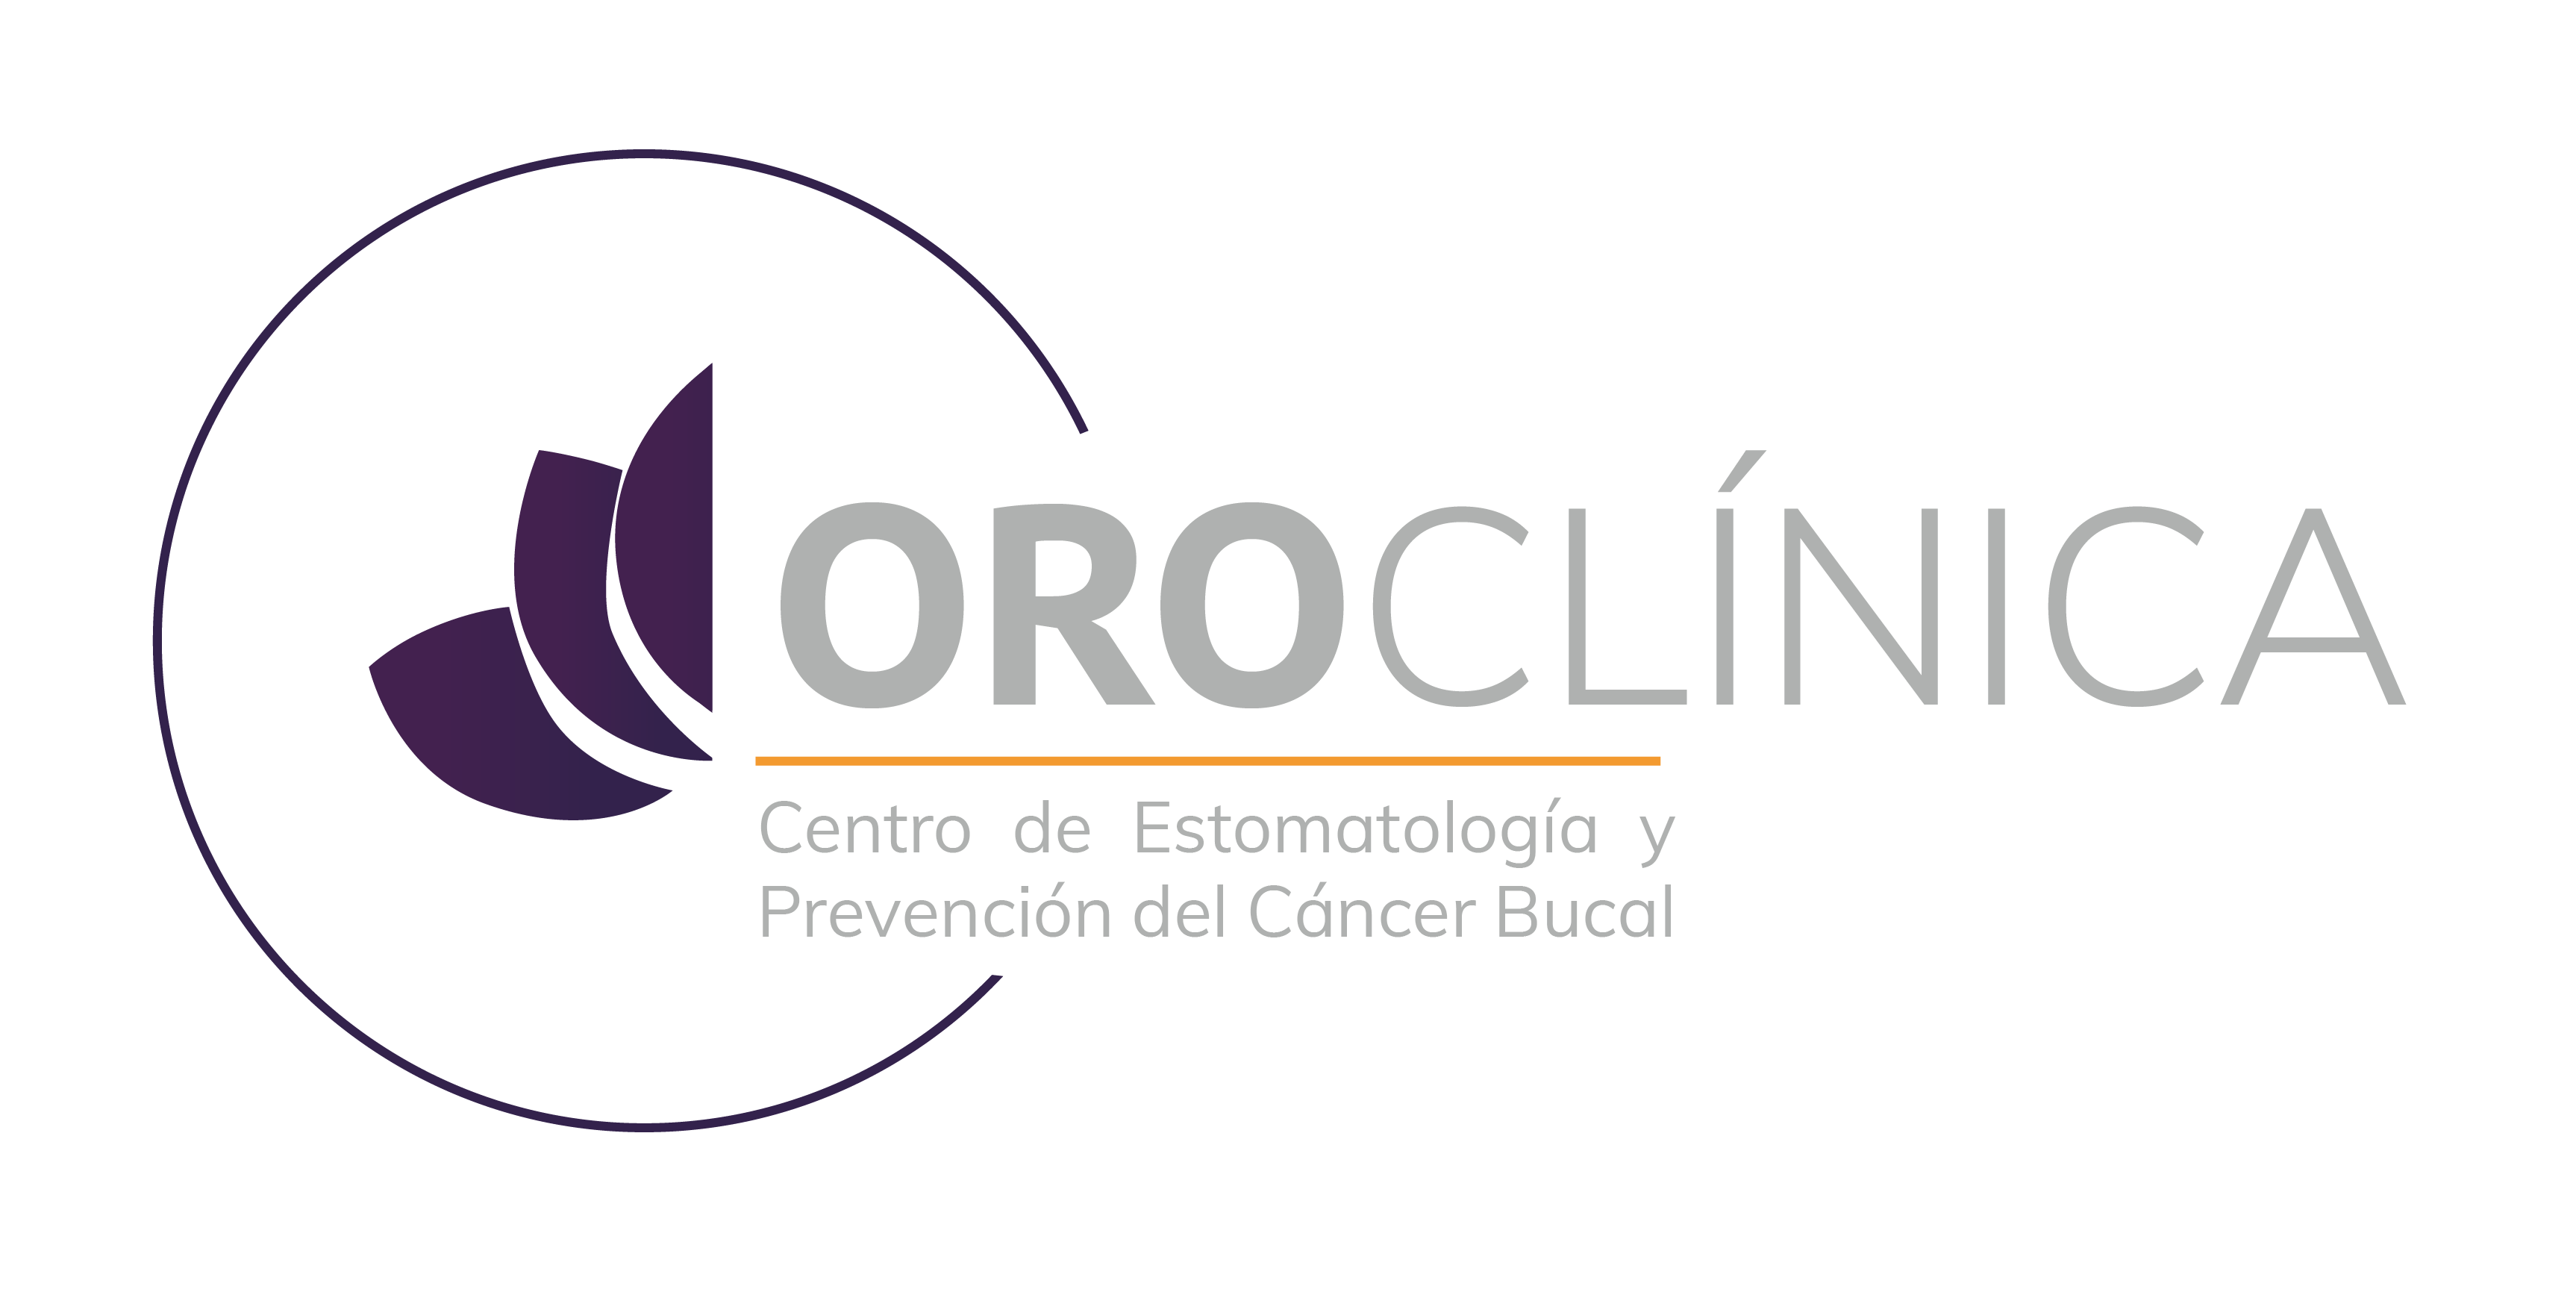 Cáncer de Boca y Diagnóstico de Enfermedades en Costa Rica